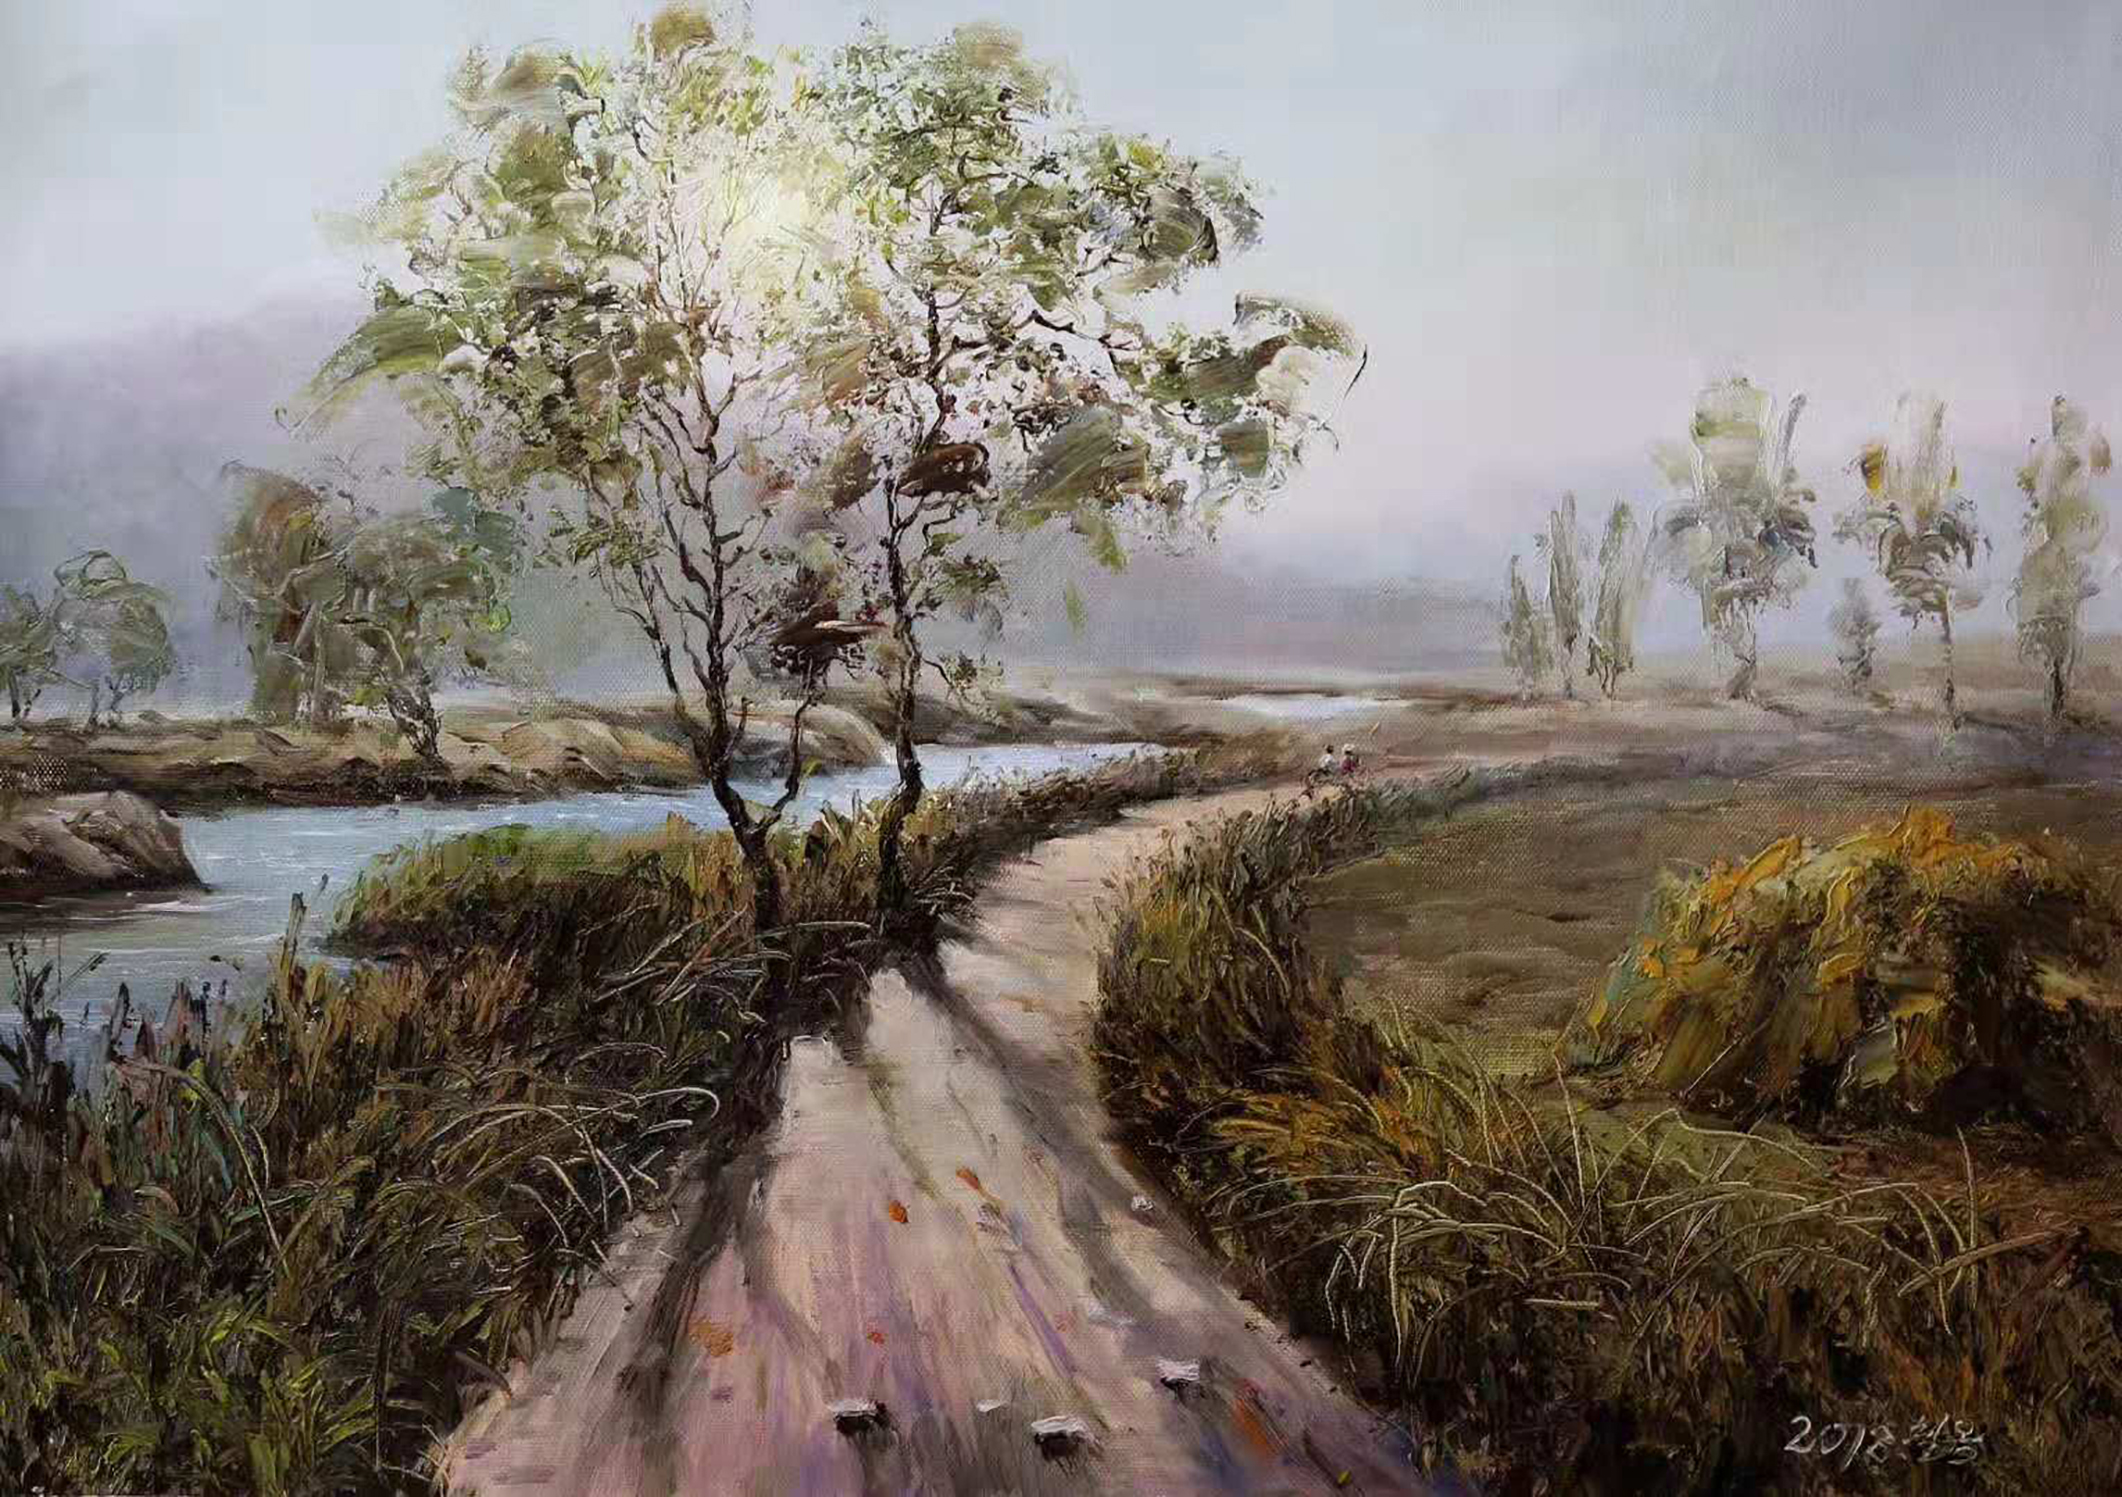 用油彩表现那条记忆中的泥路,油画风景欣赏